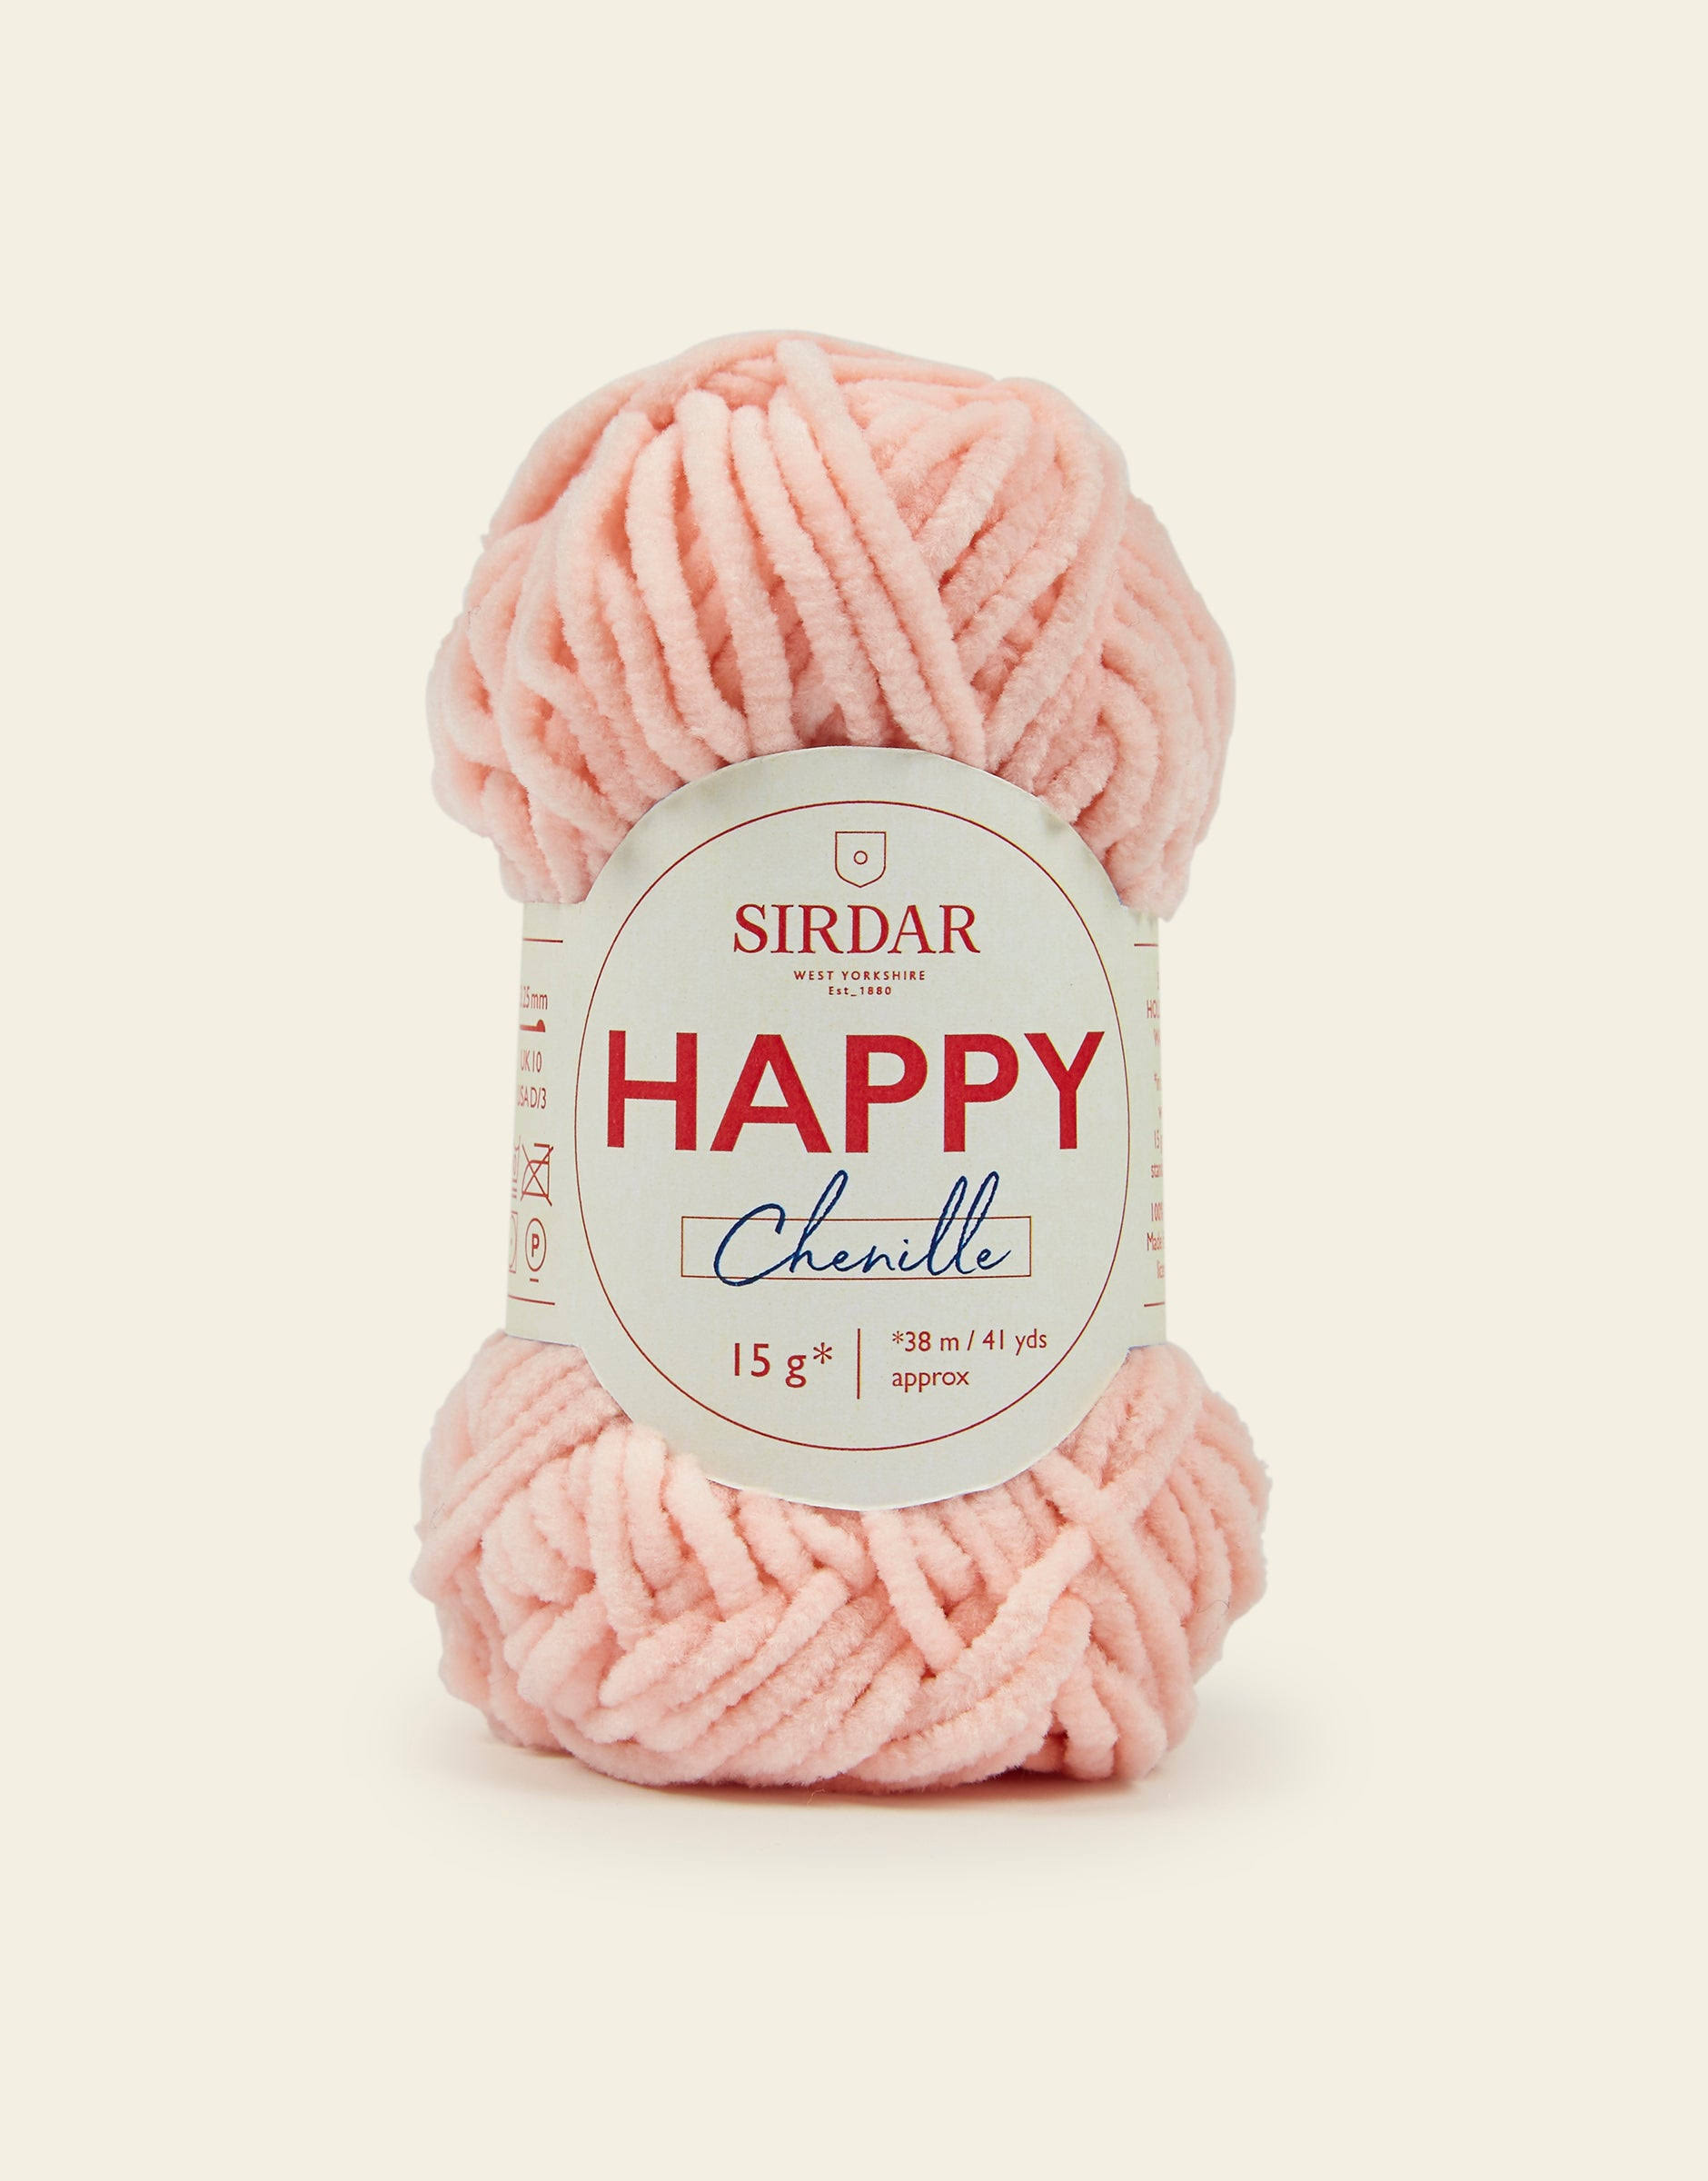 Sirdar Happy Chenille Cheeky - Yarn.com